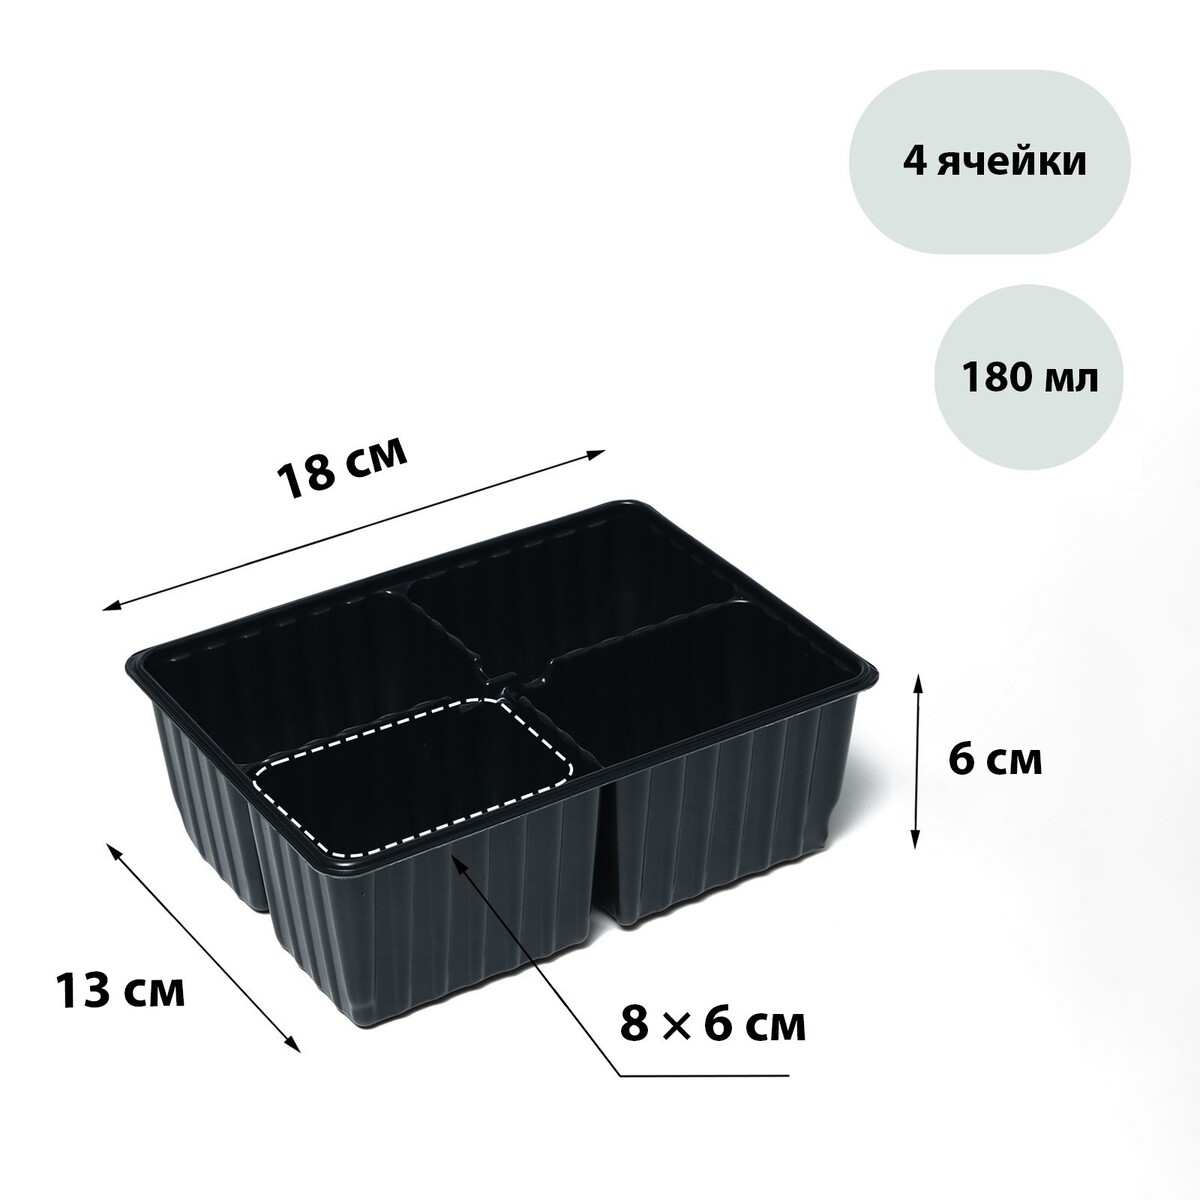 Кассета для рассады greengo на 4 ячейки, по 180 мл, пластиковая, черная, 18 × 13 × 6 см, в наборе 10 кассет